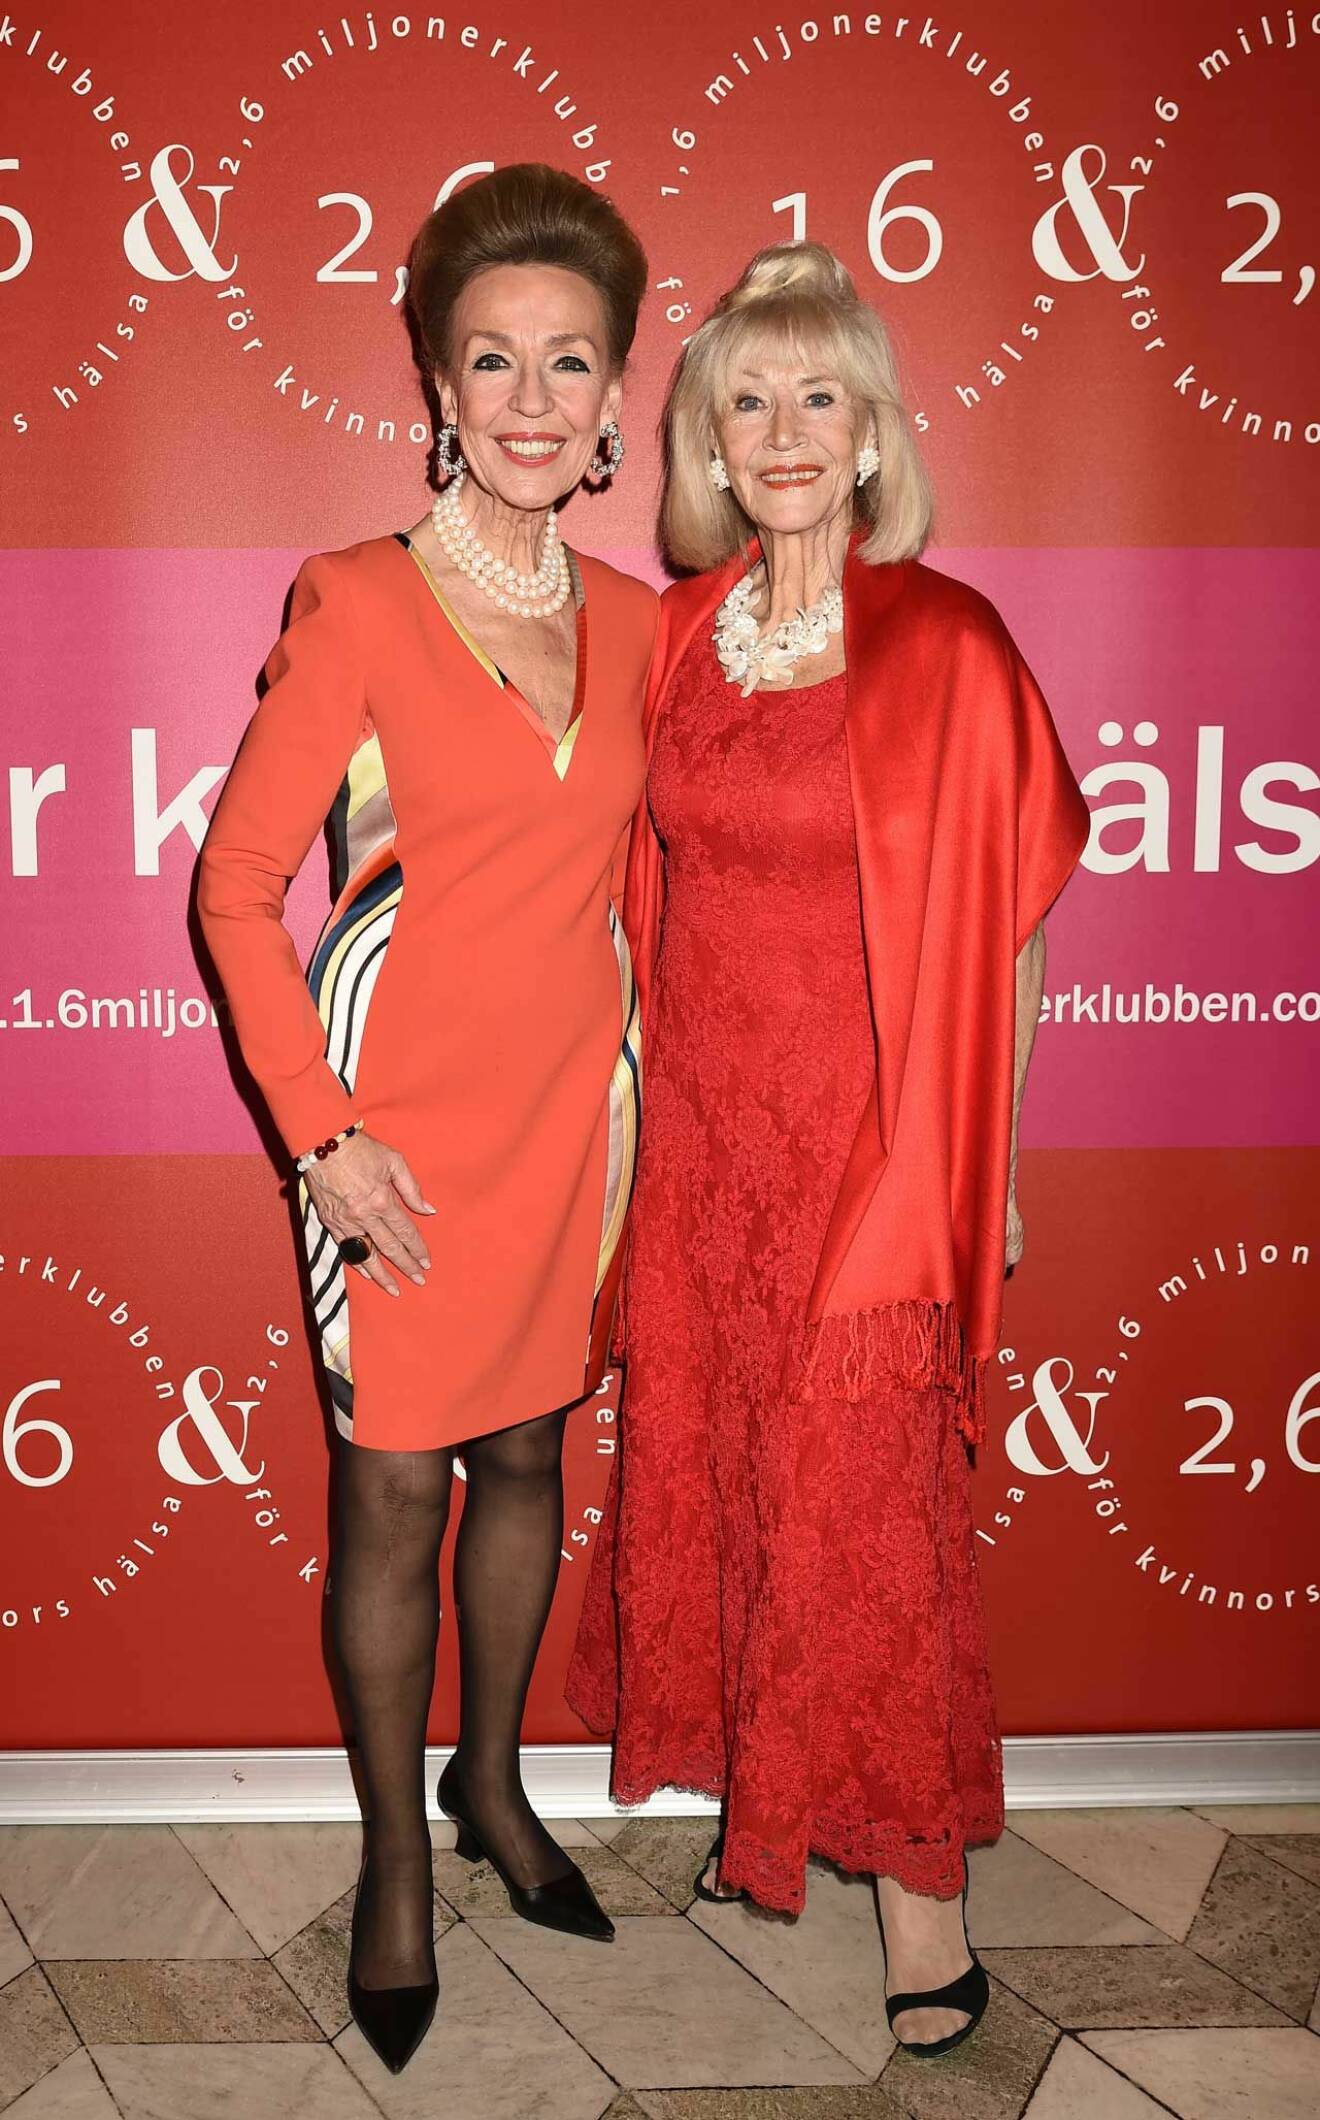 Två till mode- visningsladies! Boutiqueägarinnan Gaby Borglund och modellmamman Birgitta Stubbing. 